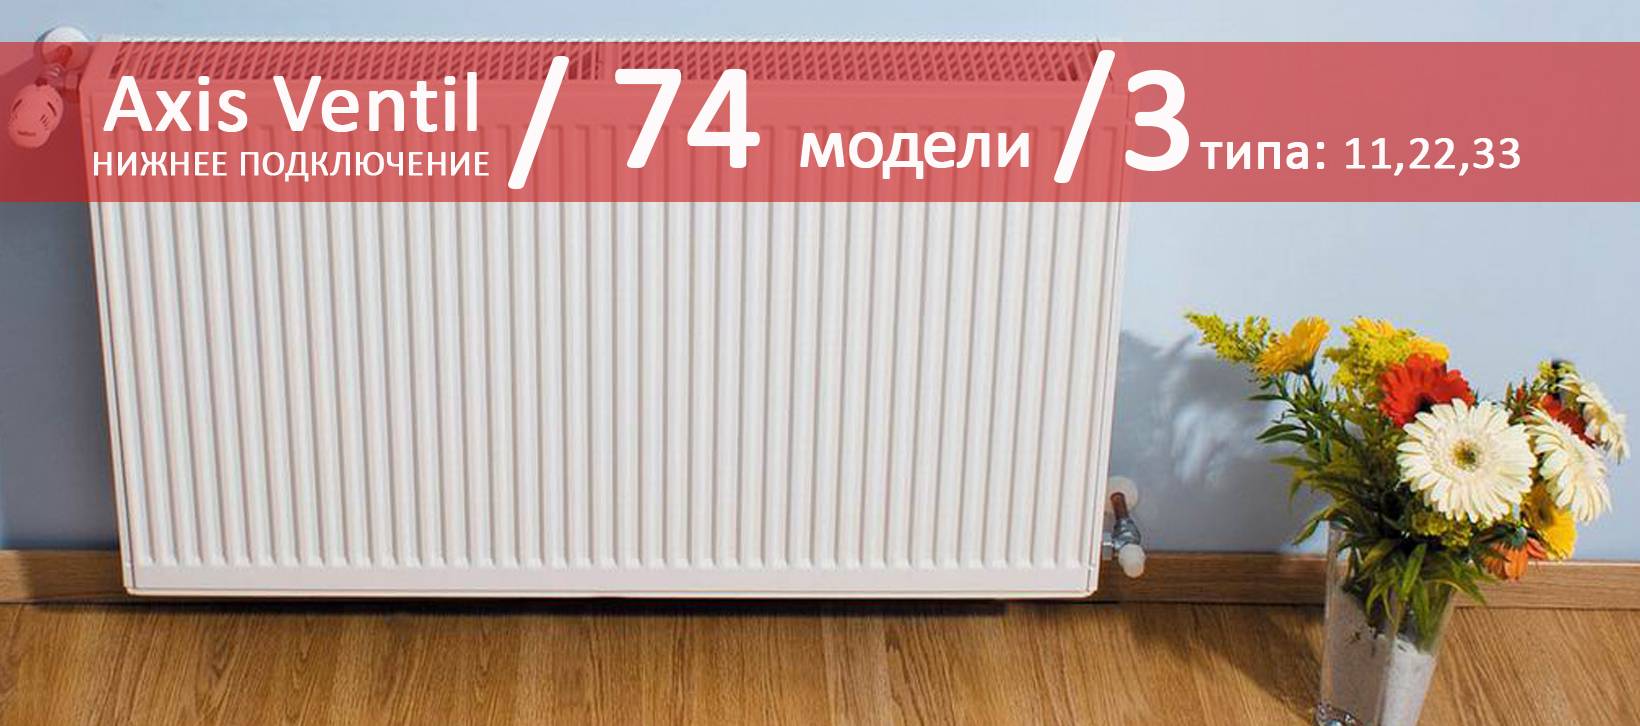 Панельная система отопления: панельное отопление это – панельные радиаторы отопления — знакомимся ближе — termopaneli59.ru — отопление маркет